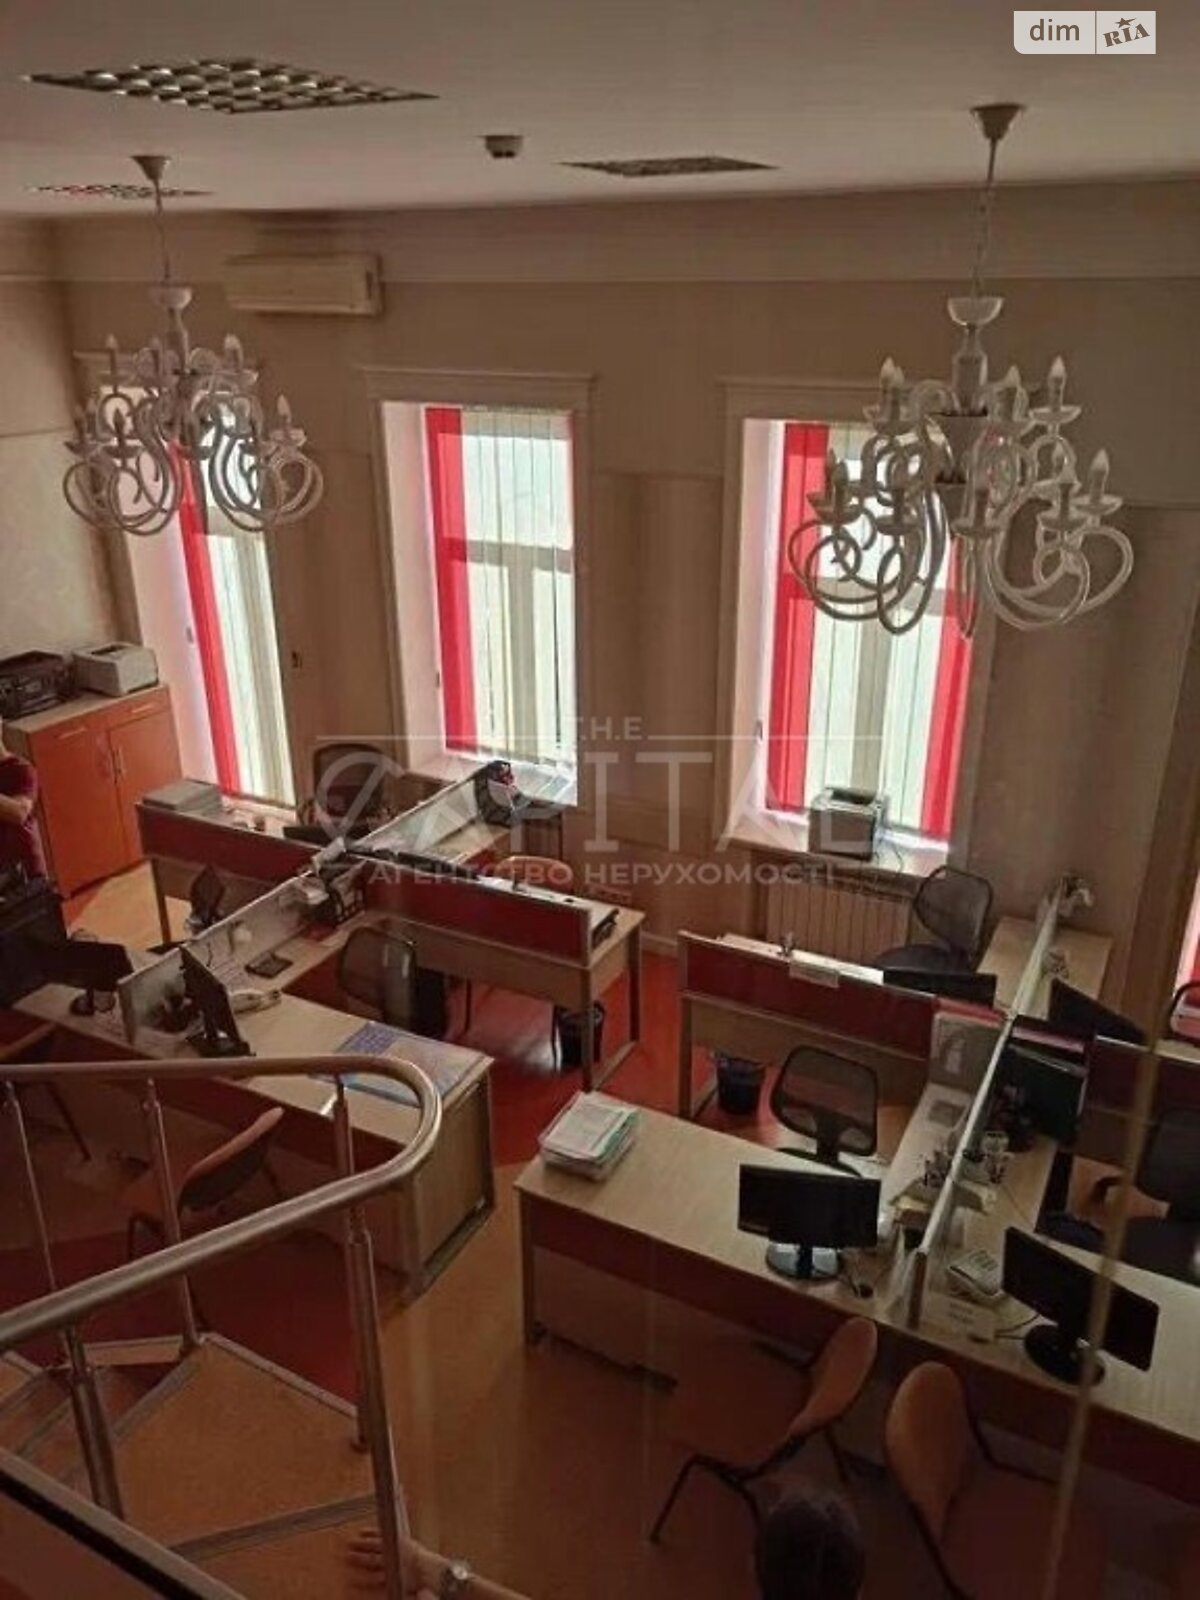 Аренда офисного помещения в Киеве, Владимирская улица 65, помещений - 3, этаж - 2 фото 1